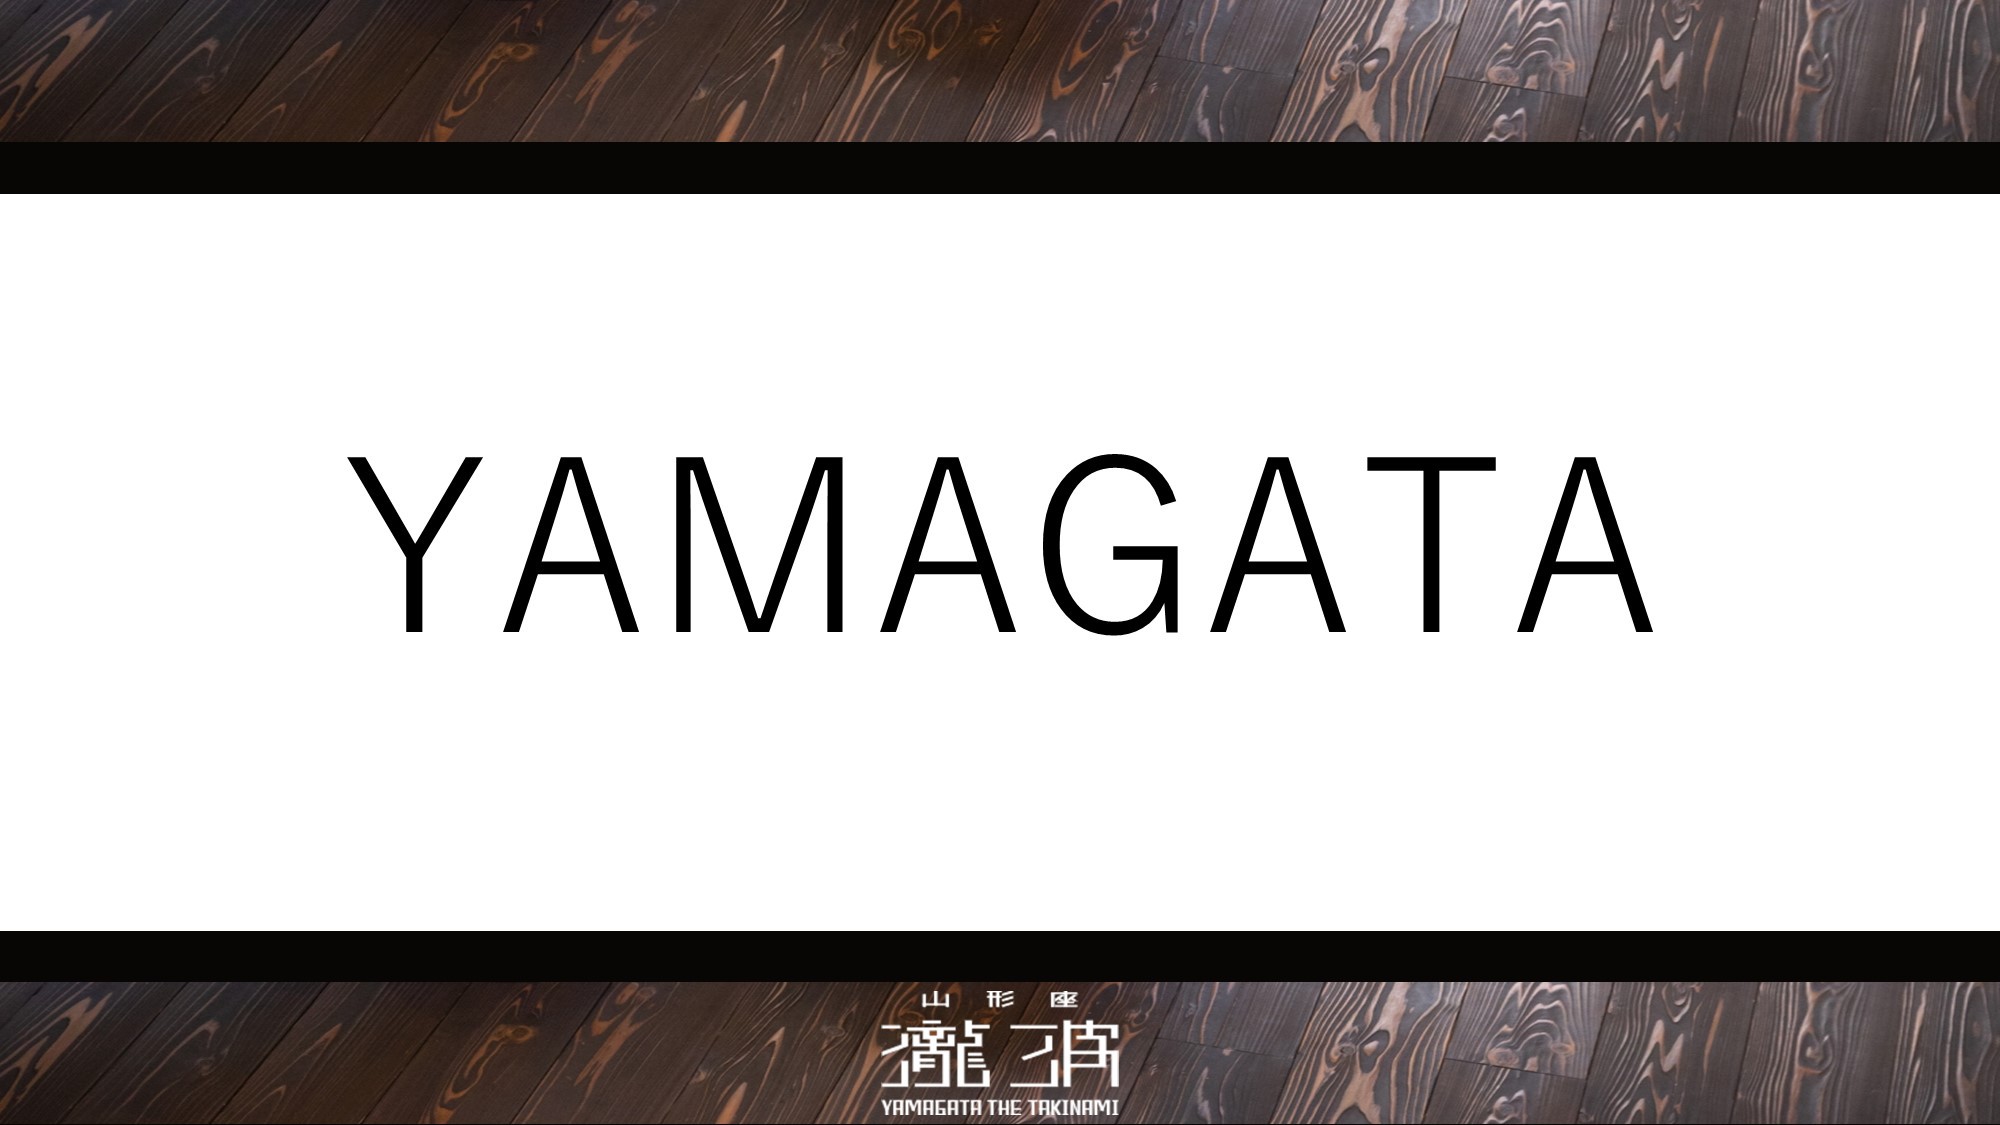 1階2階各3室の全6室、山形で生まれた名作家具や作品に山形らしい趣を映した「YAMAGATA」